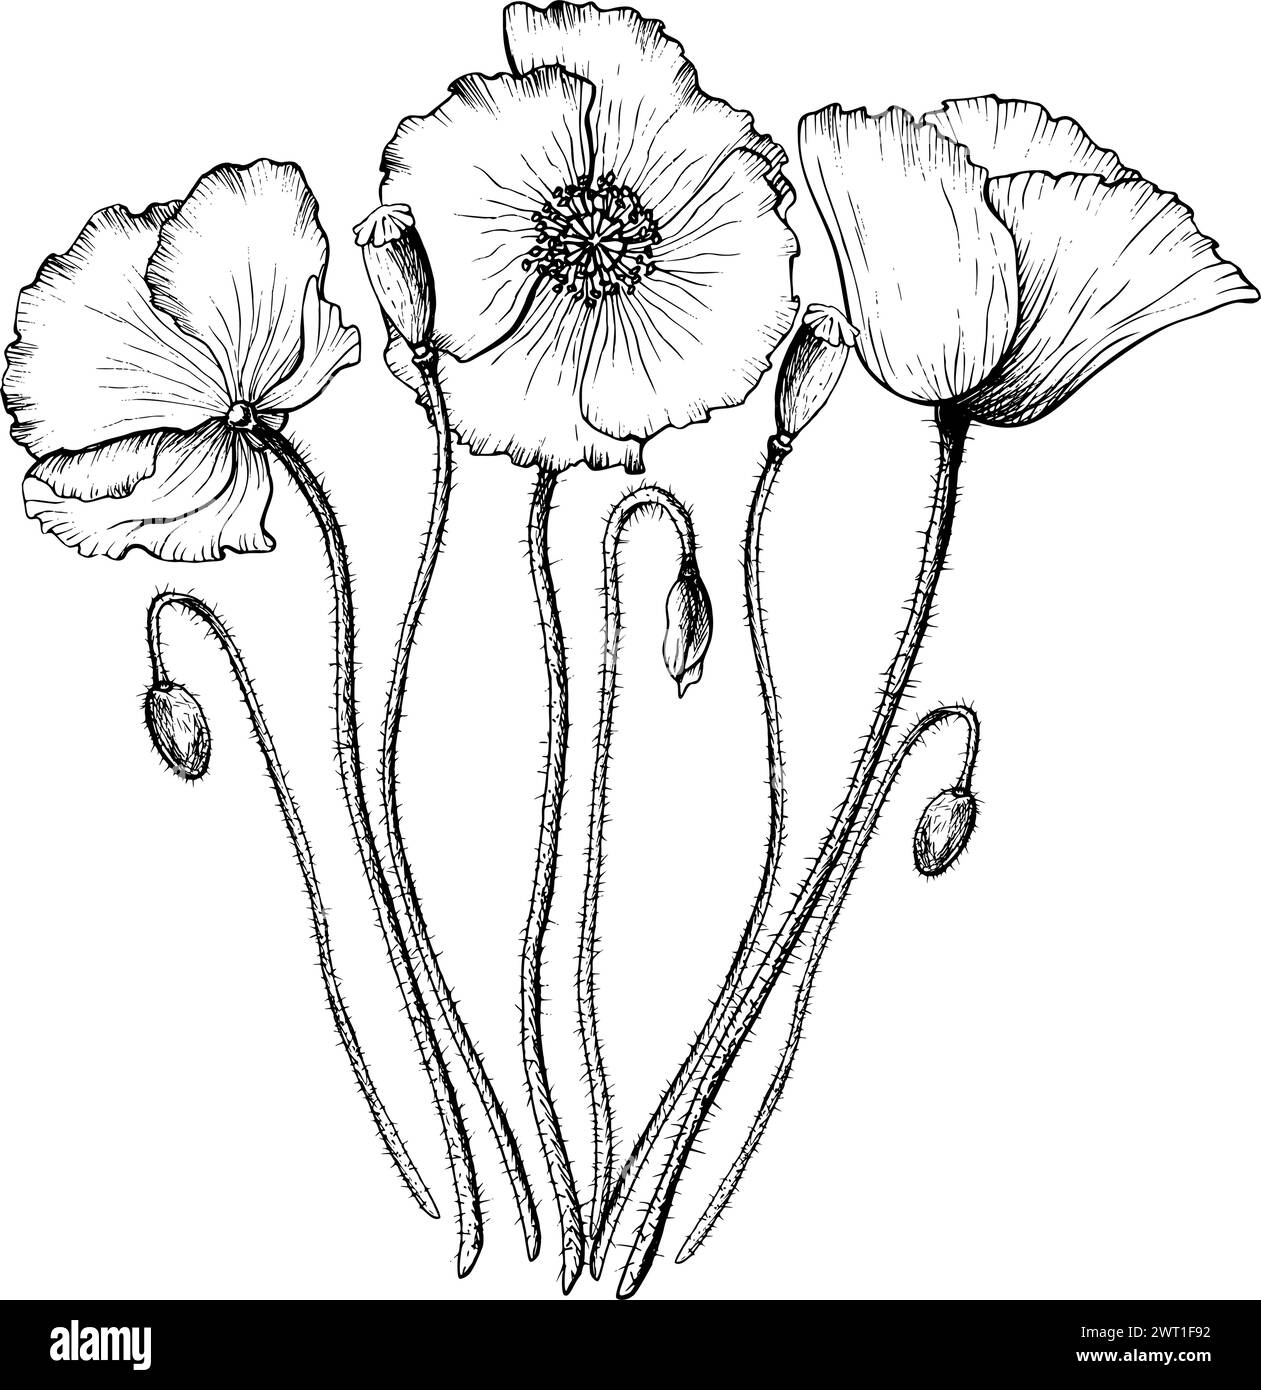 Composizione di fiori e gemme di papavero in fiore. Illustrazione del vettore botanico disegnata a mano. Schizzo monocromatico di fiori selvatici. Illustrazione Vettoriale